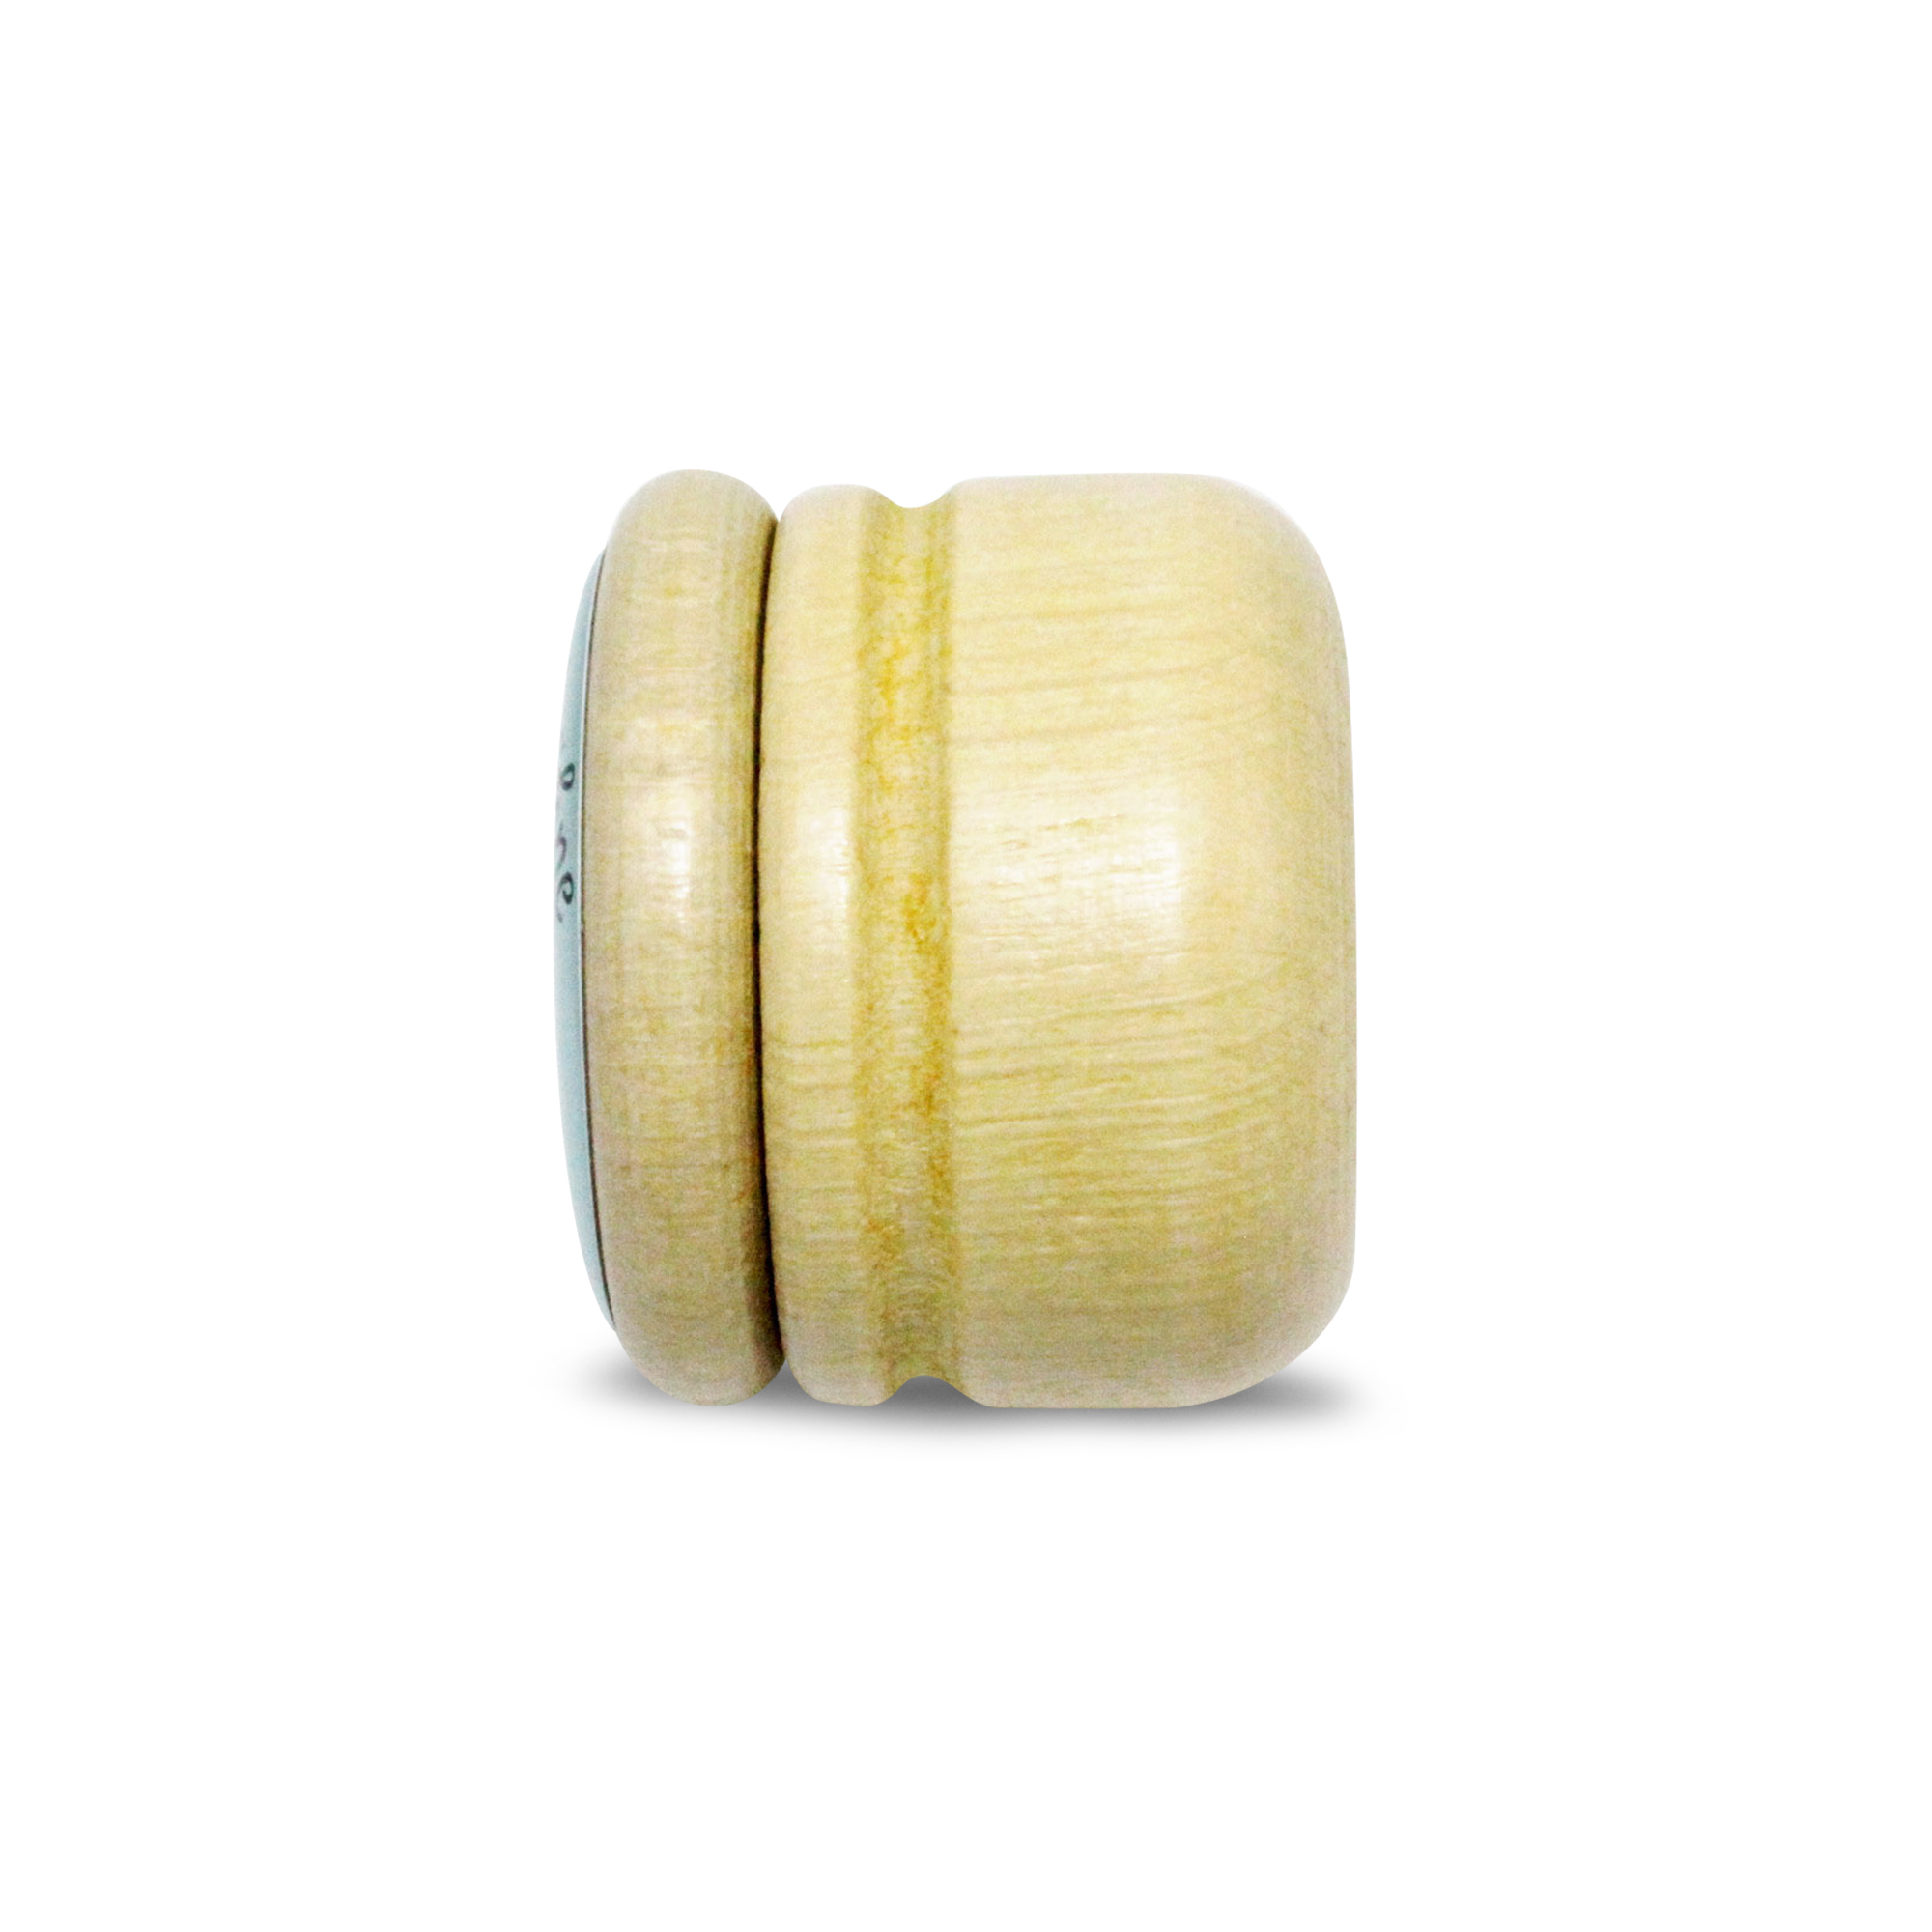 Milchzahndose Einhorn Zahndose Milchzähne Bilderdose aus Holz mit Drehverschluss 44 mm ( Einhorn ) - 7011